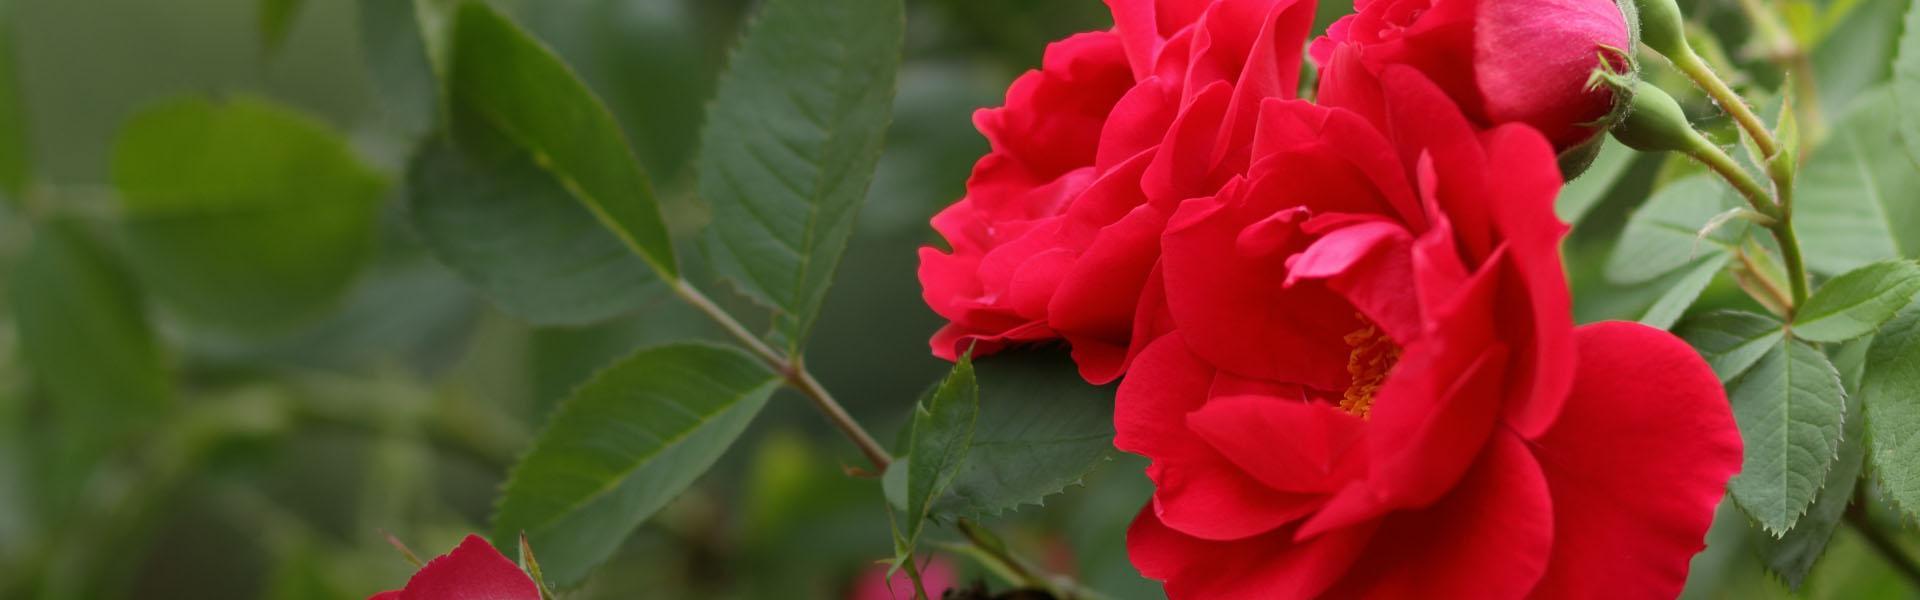 Slajd - 2 - czerwone róże